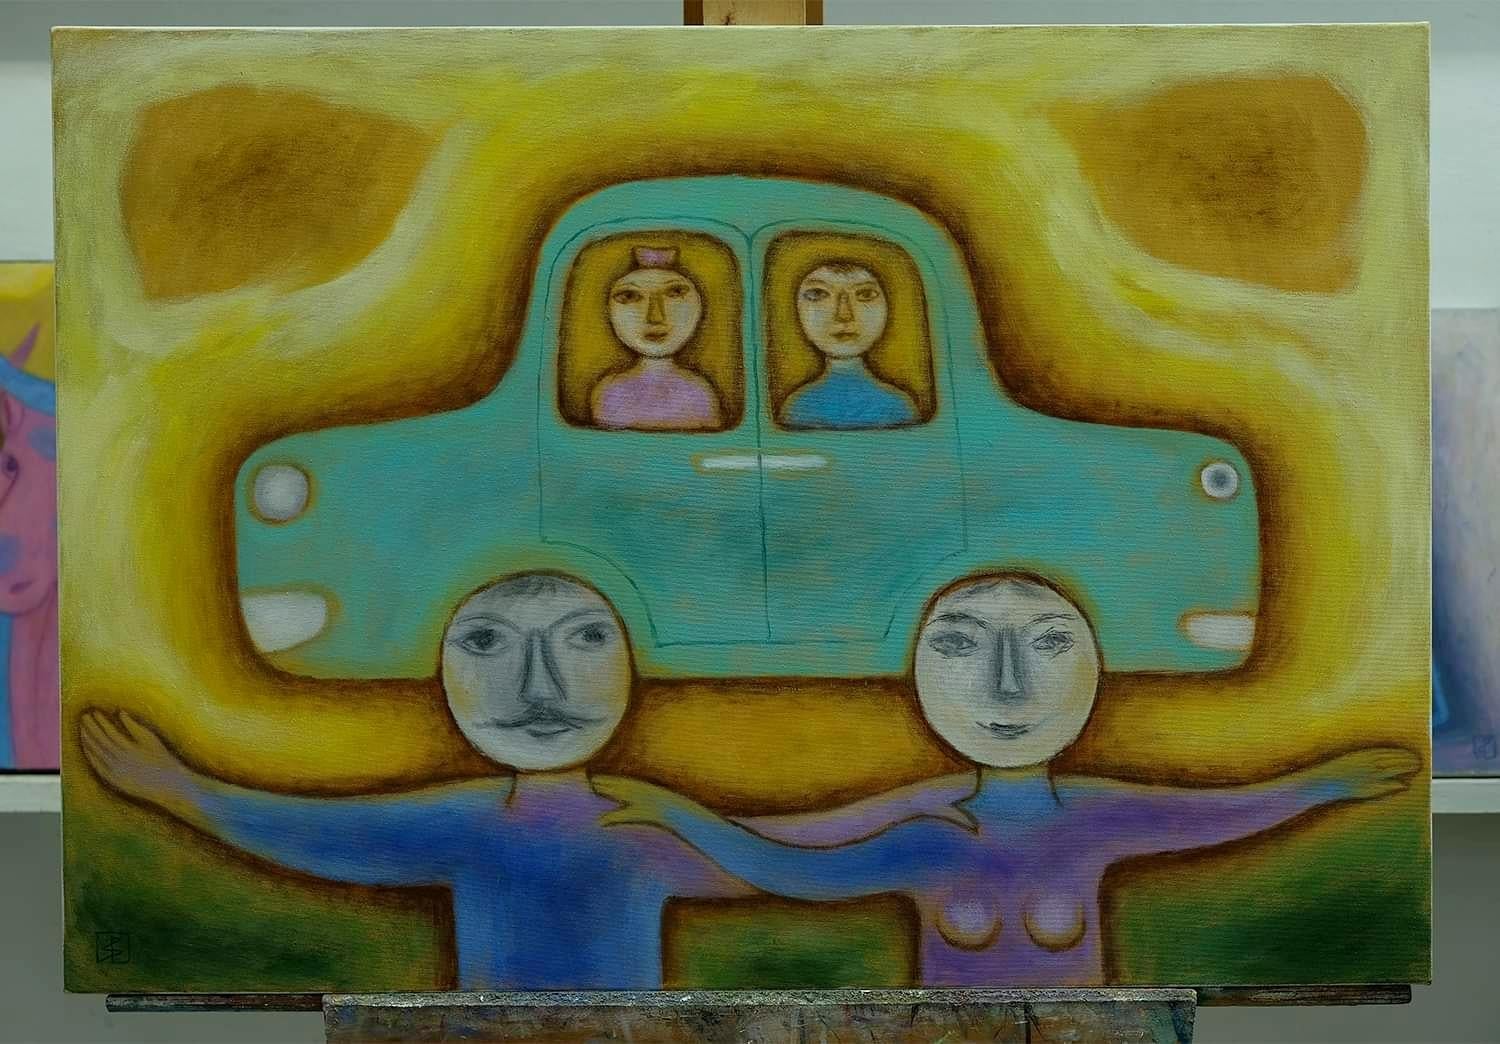 FAMILY CAR - Painting by Grigori Ivanov